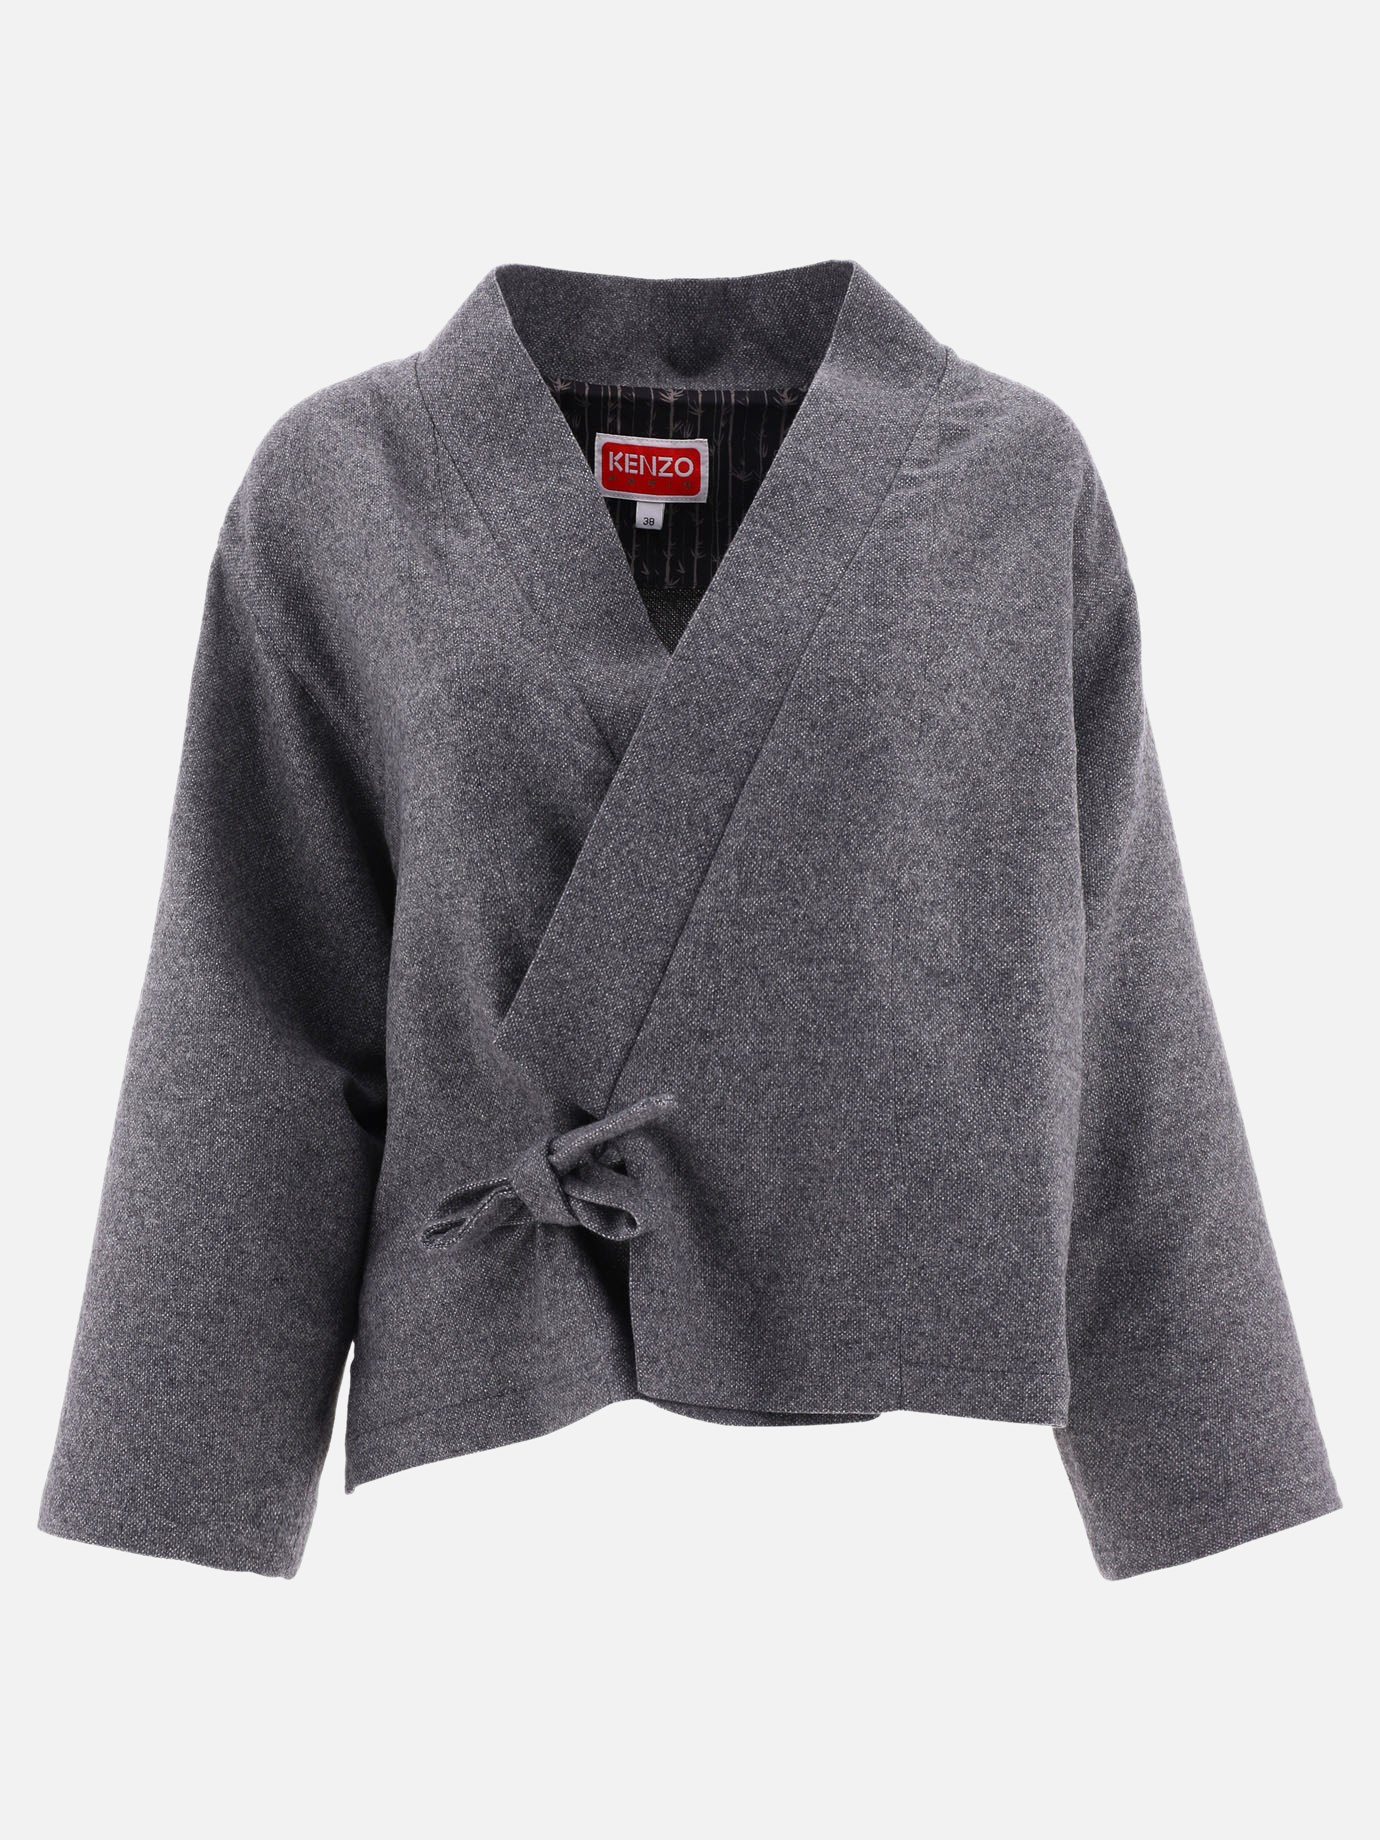  Kimono  jacketby Kenzo - 5